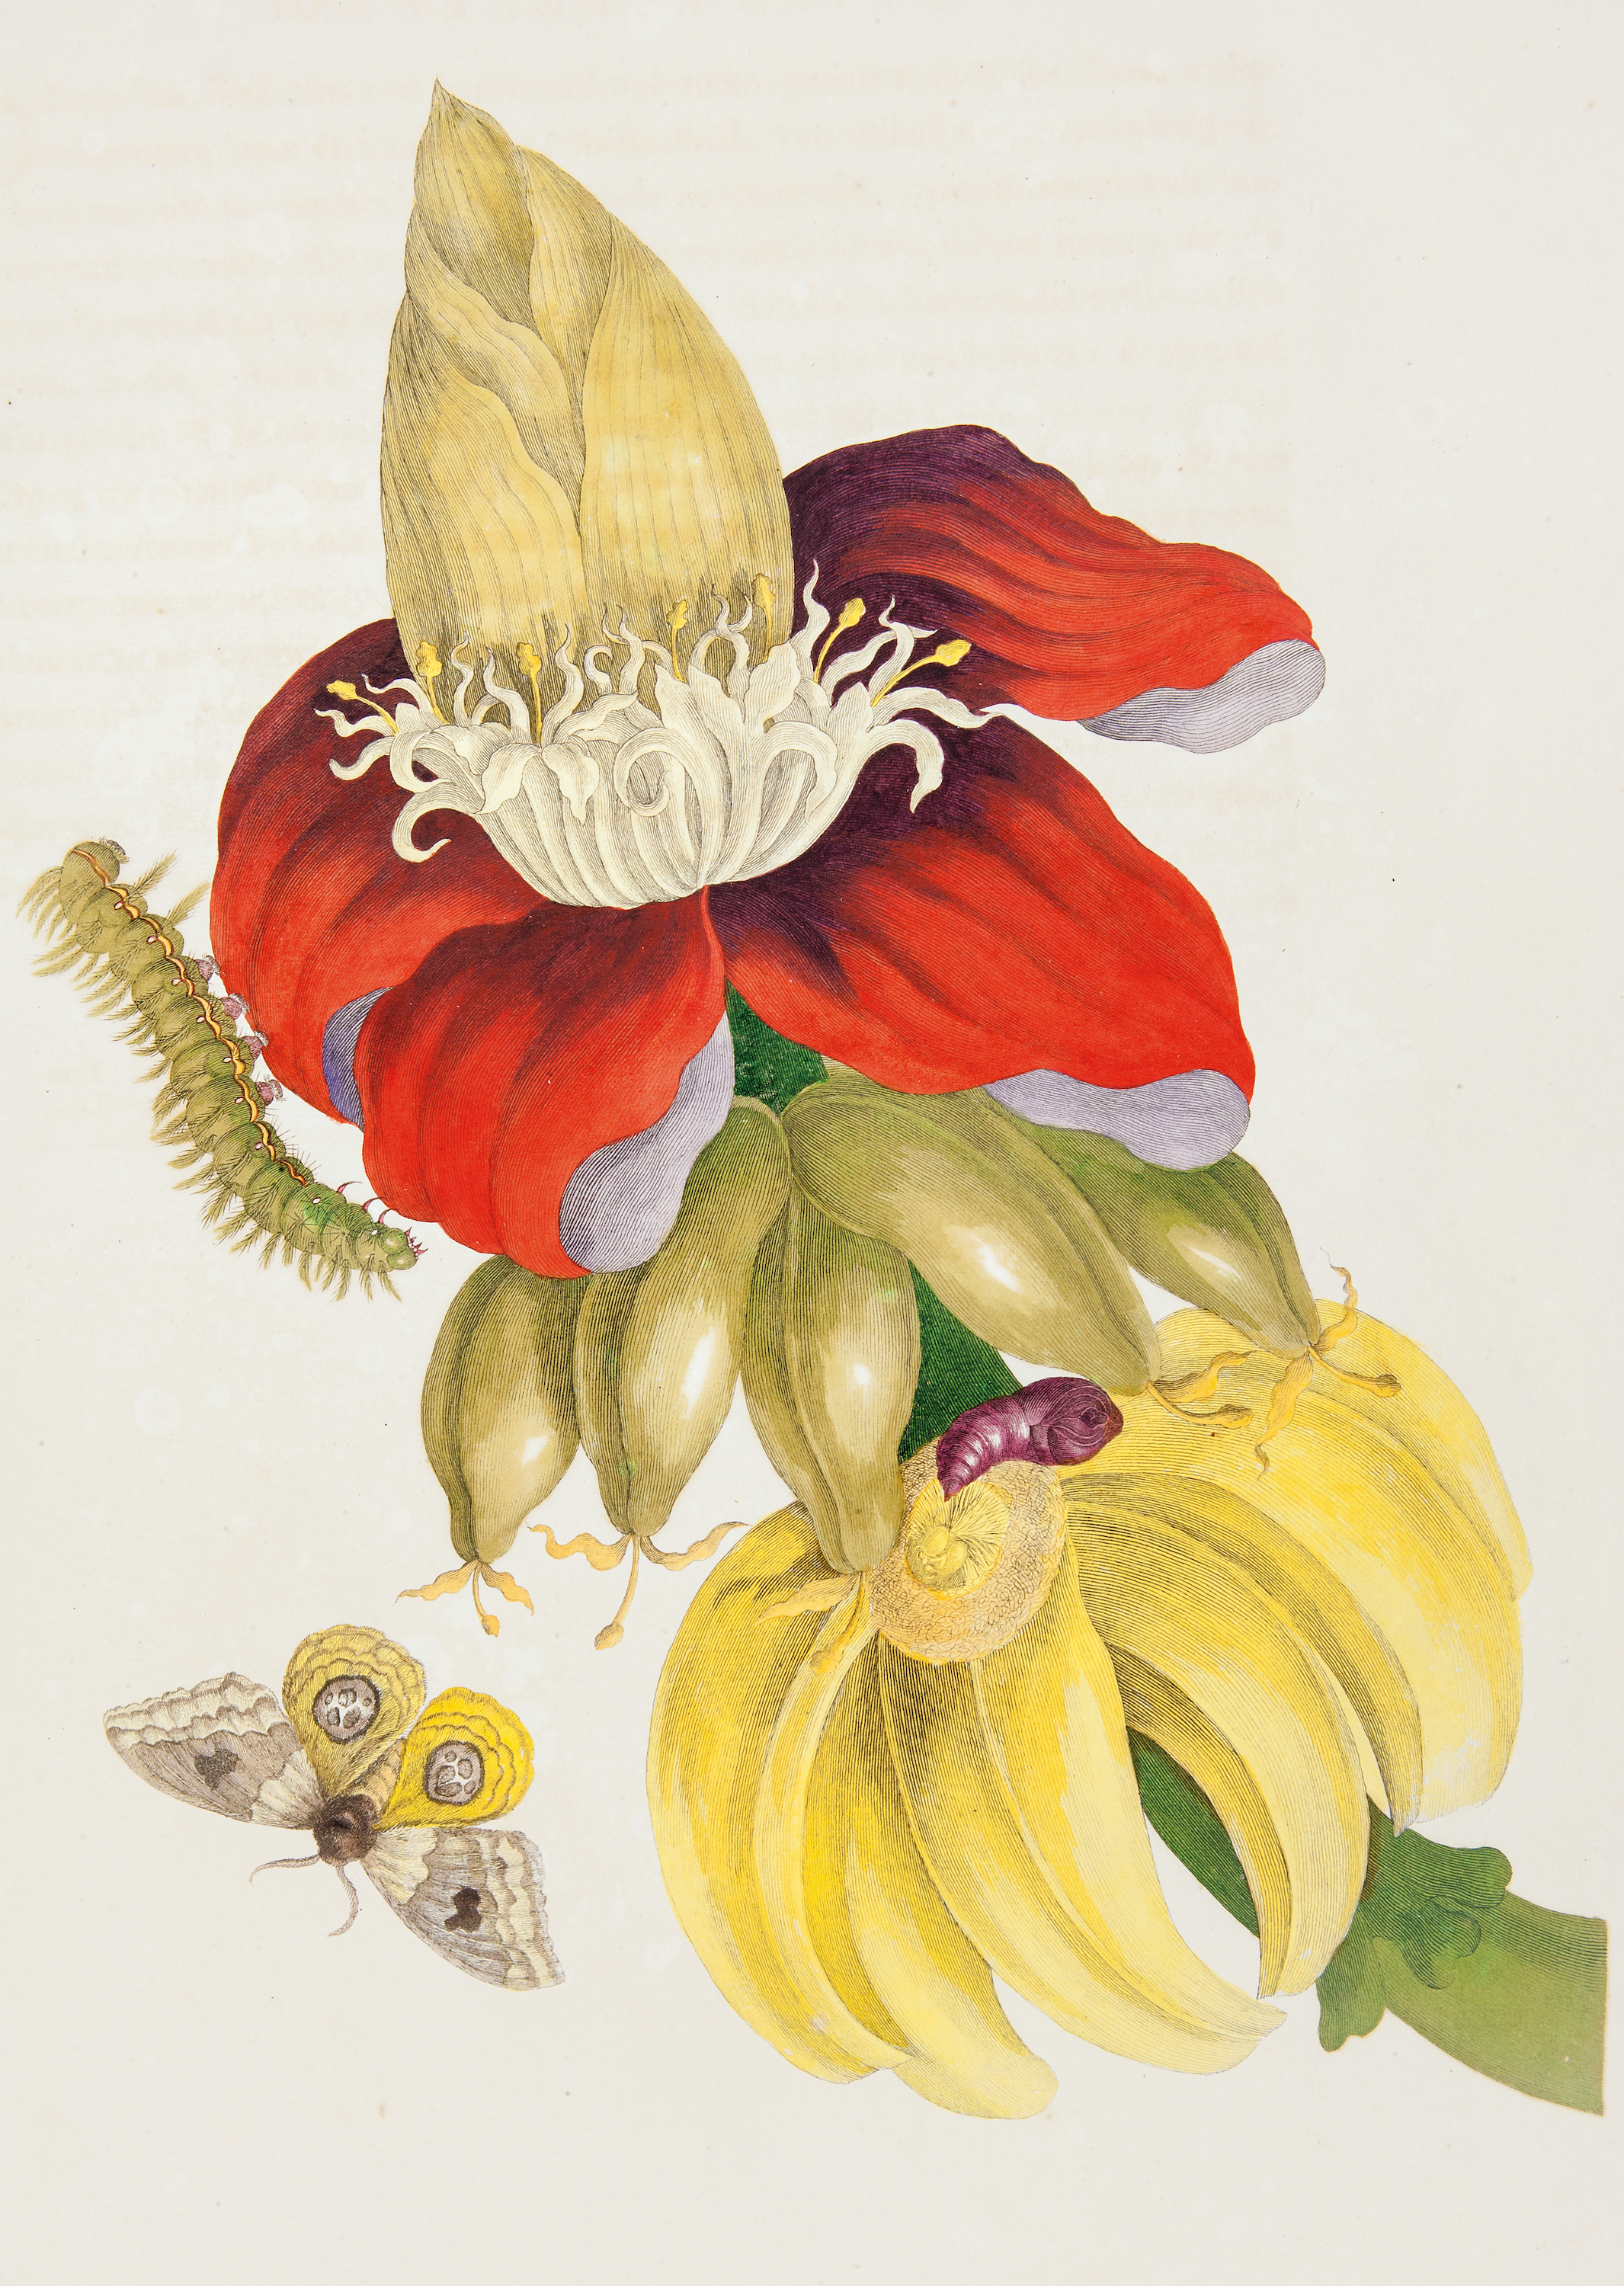 Banánovník a vývojová stádia martináče Automeris liberia by Pieter Sluyter after Maria Sibylla Merian - 1705 